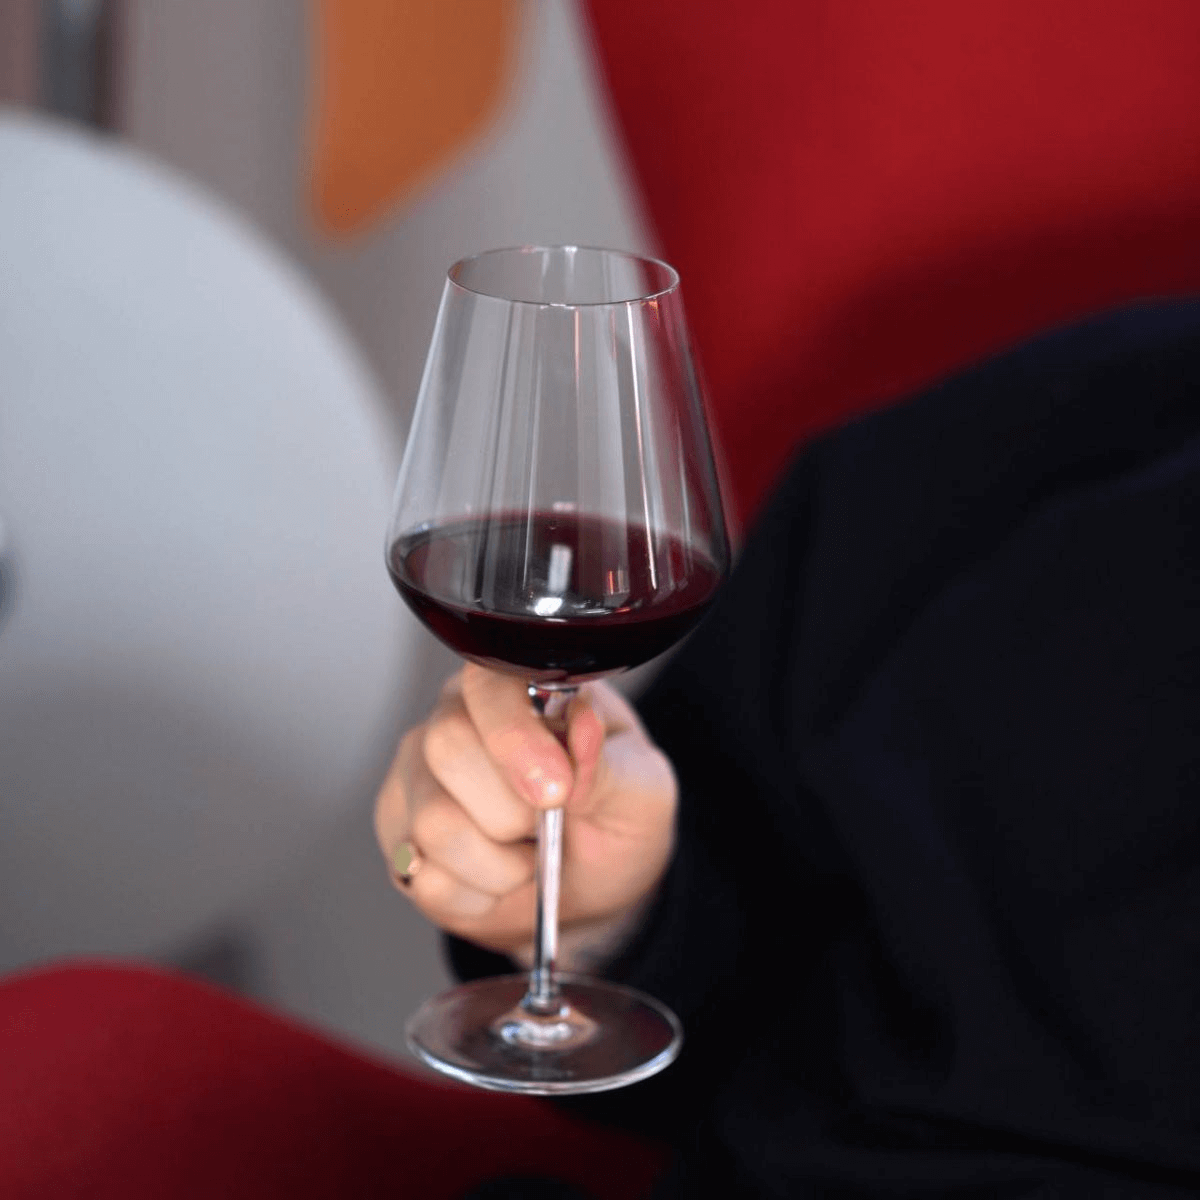 Việc chọn dáng ly rượu phù hợp ảnh hưởng nhiều đến hương vị và trải nghiệm khi uống rượu